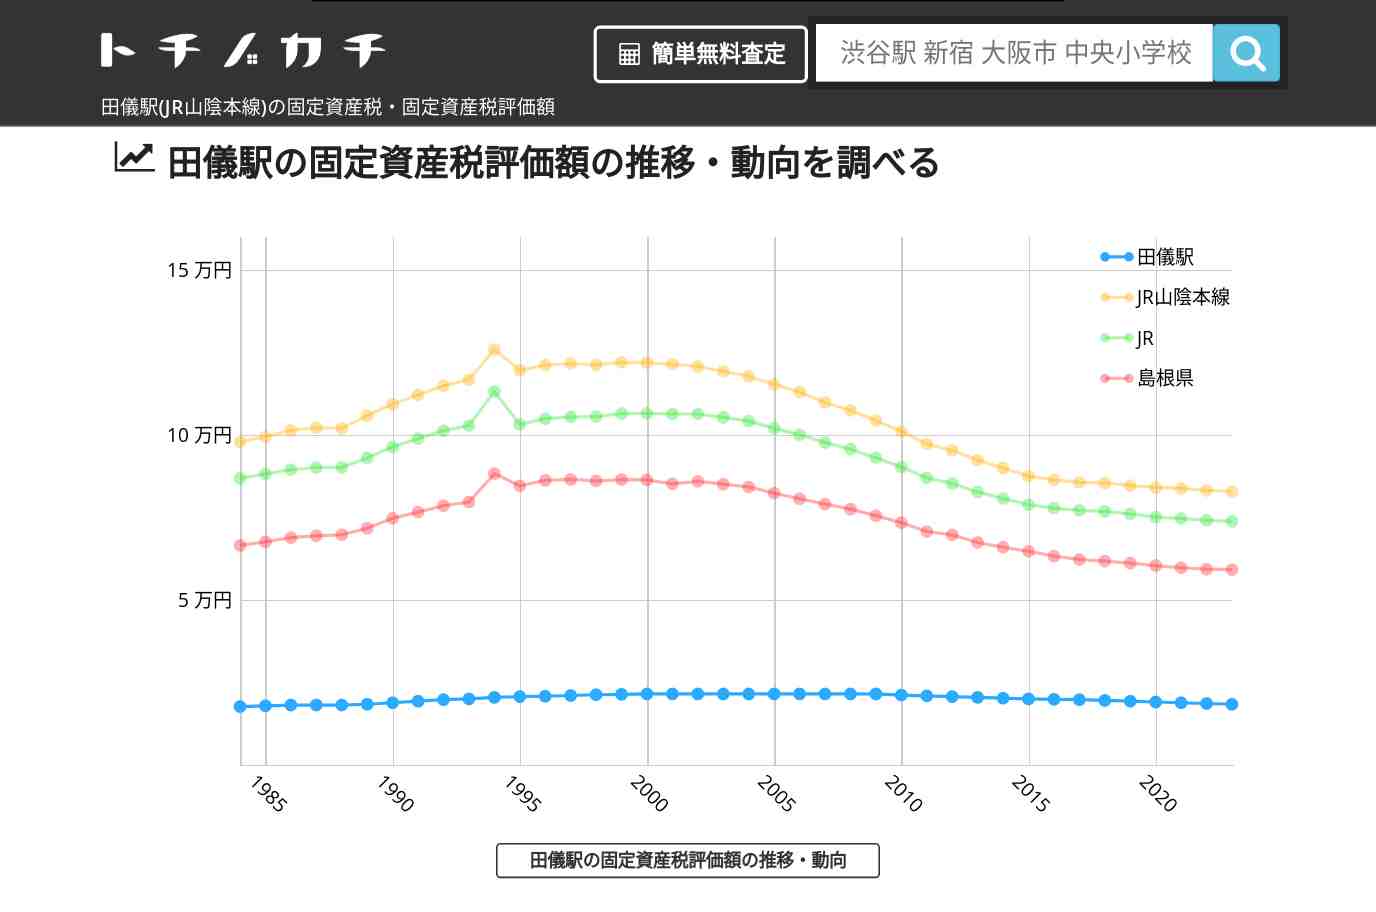 田儀駅(JR山陰本線)の固定資産税・固定資産税評価額 | トチノカチ